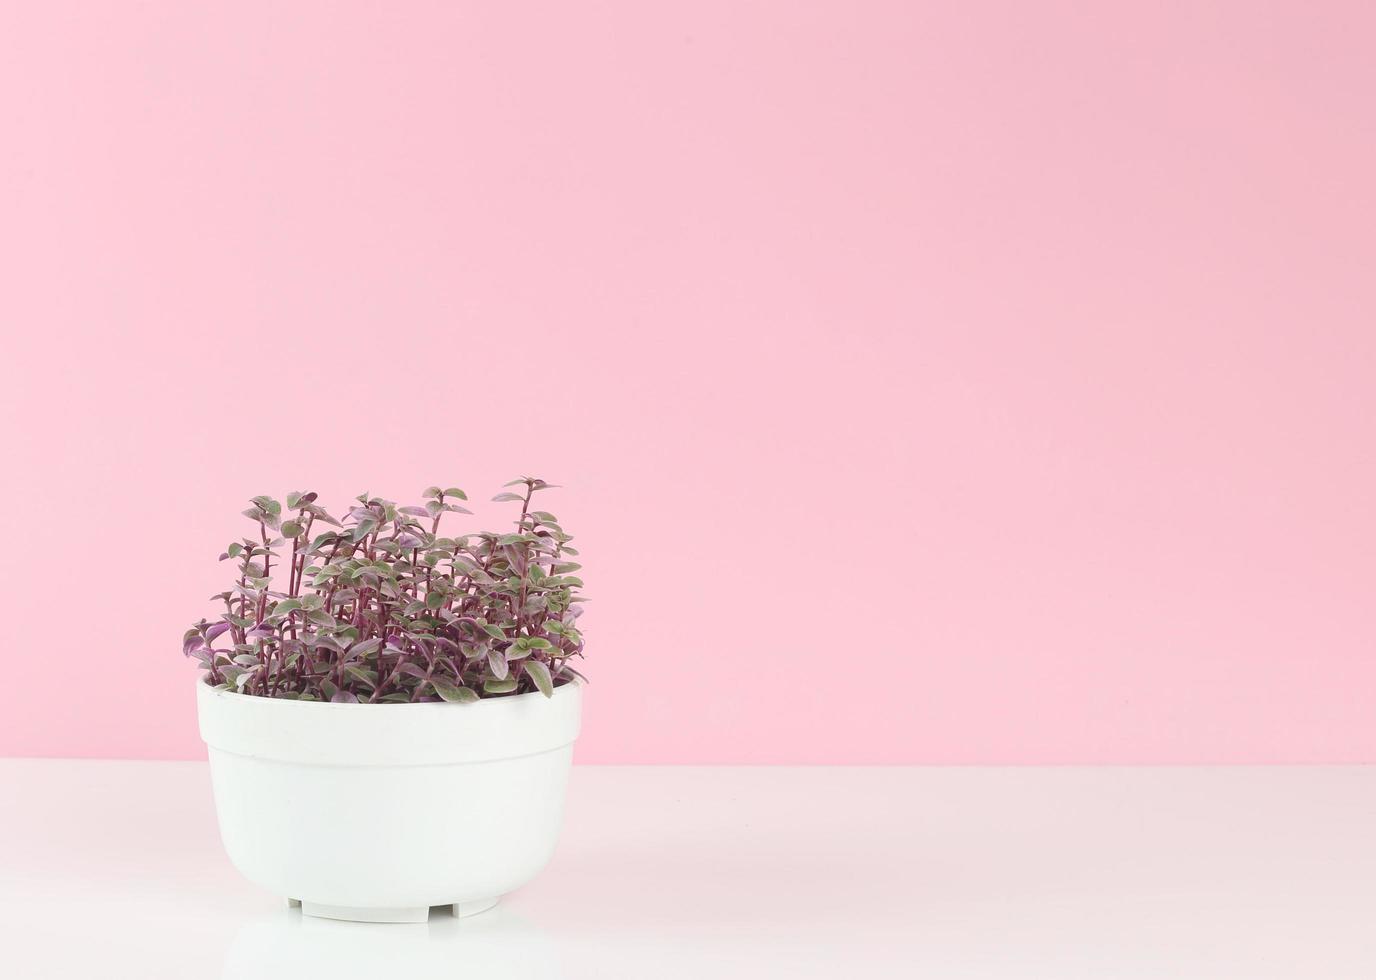 lindo vaso de plantas em branco contra fundo rosa - dia das mães - crescimento das plantas - salve a terra foto